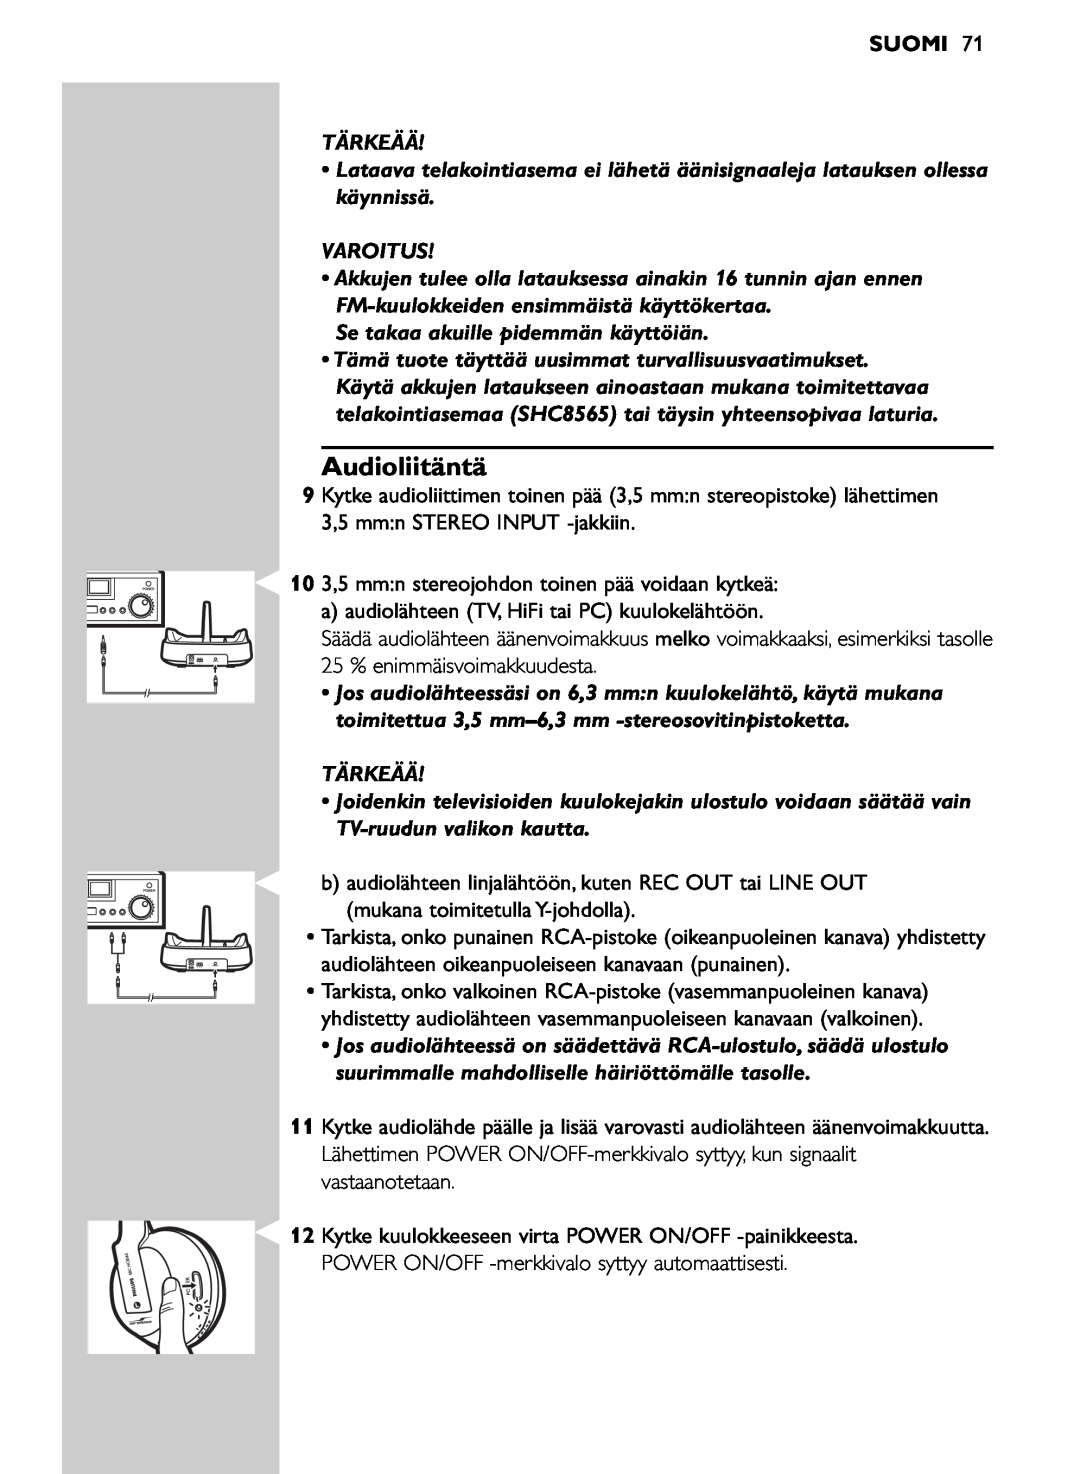 Philips SHC8565/00 manual Audioliitäntä, Suomi, Tärkeää, Varoitus, Se takaa akuille pidemmän käyttöiän 